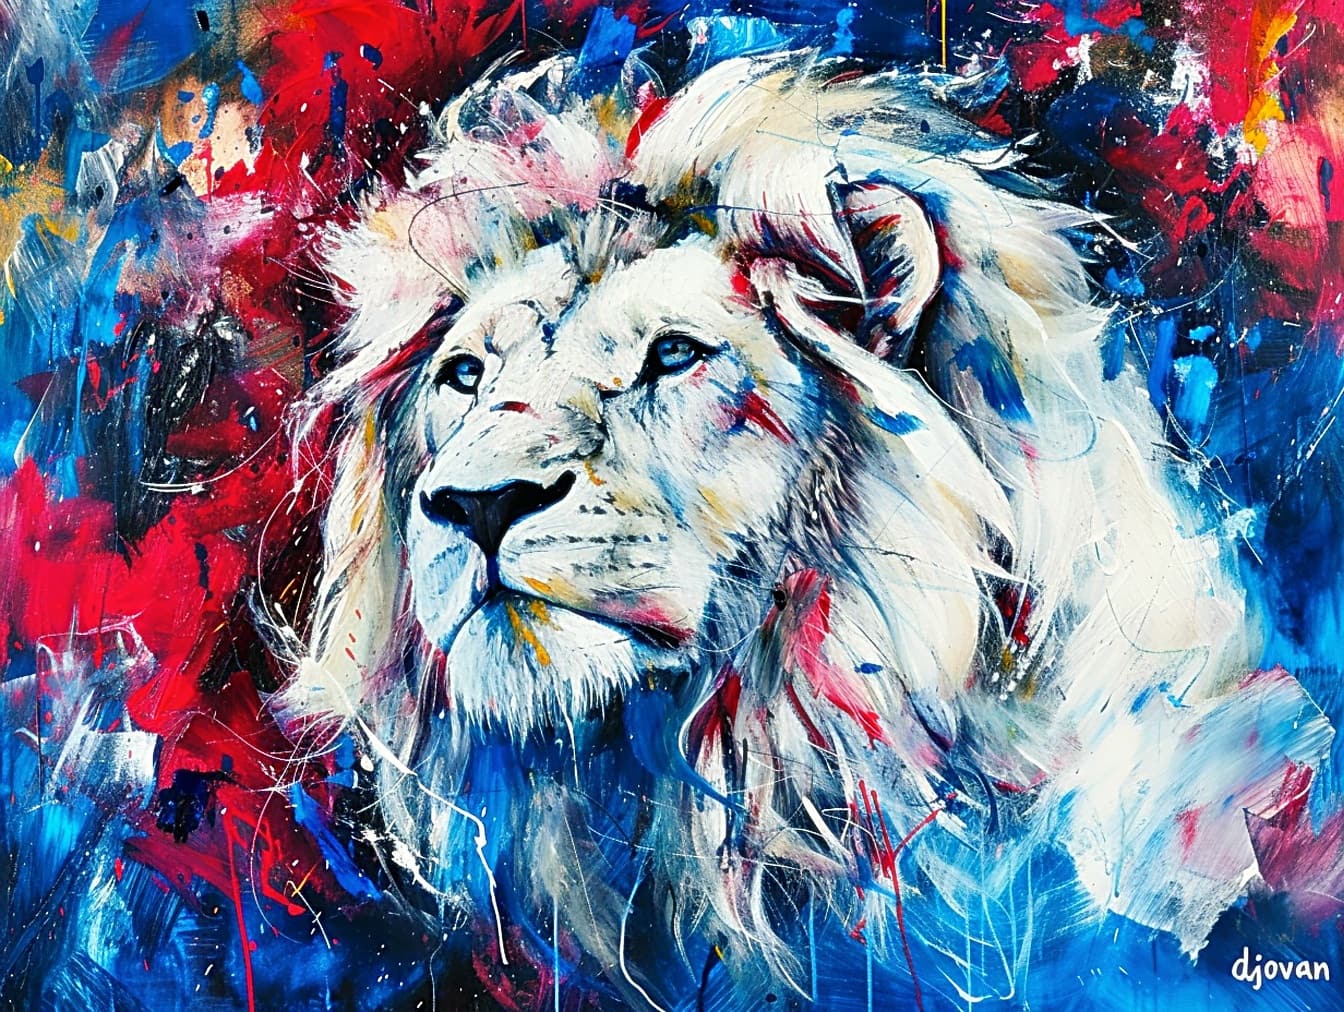 Ulje na platnu glave bijelog lava s plavim očima u pop art stilu